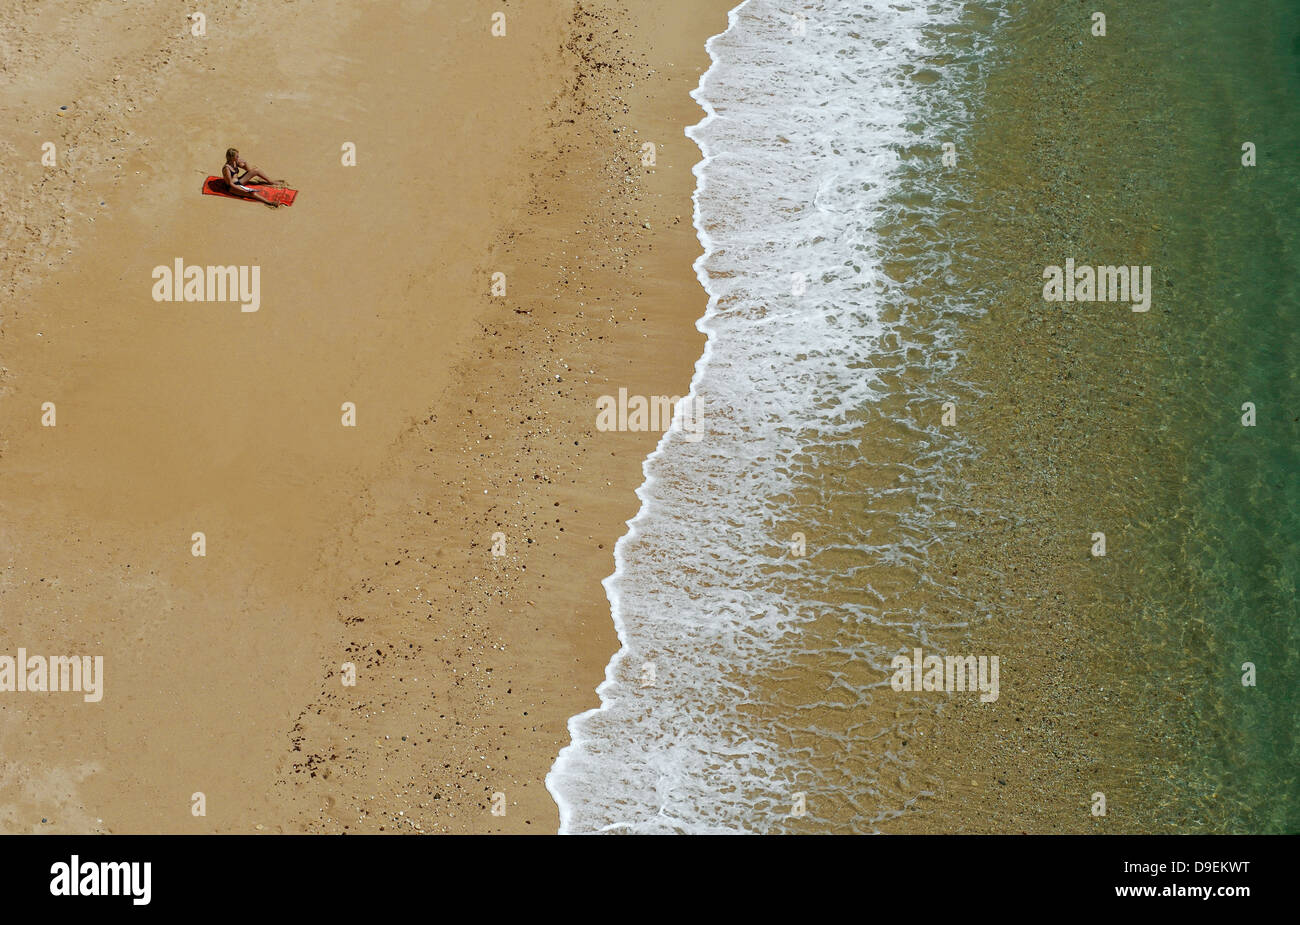 El solitario adorador solar en una playa de Algarve, Portugal. Foto de stock